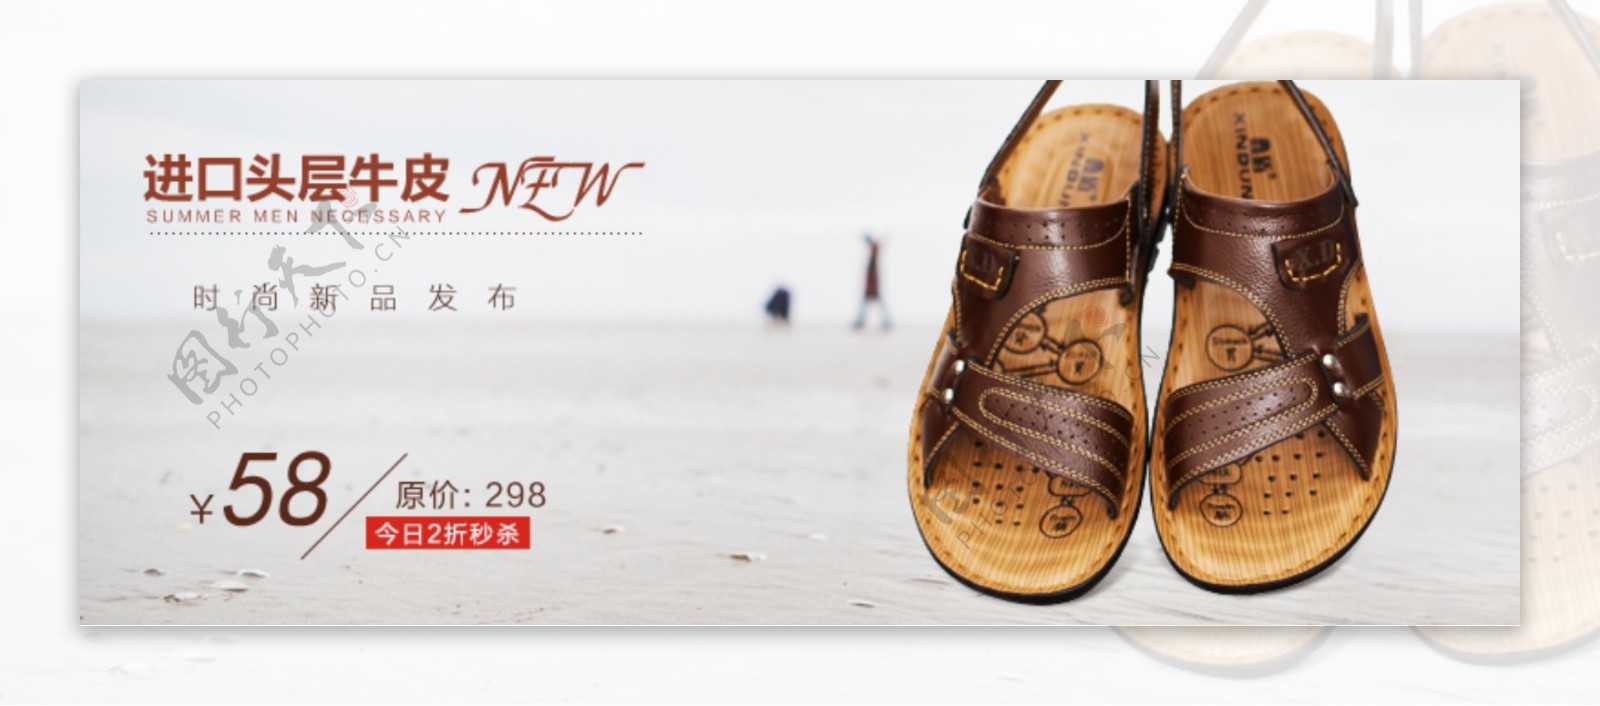 2015夏季新品男士沙滩鞋推广图